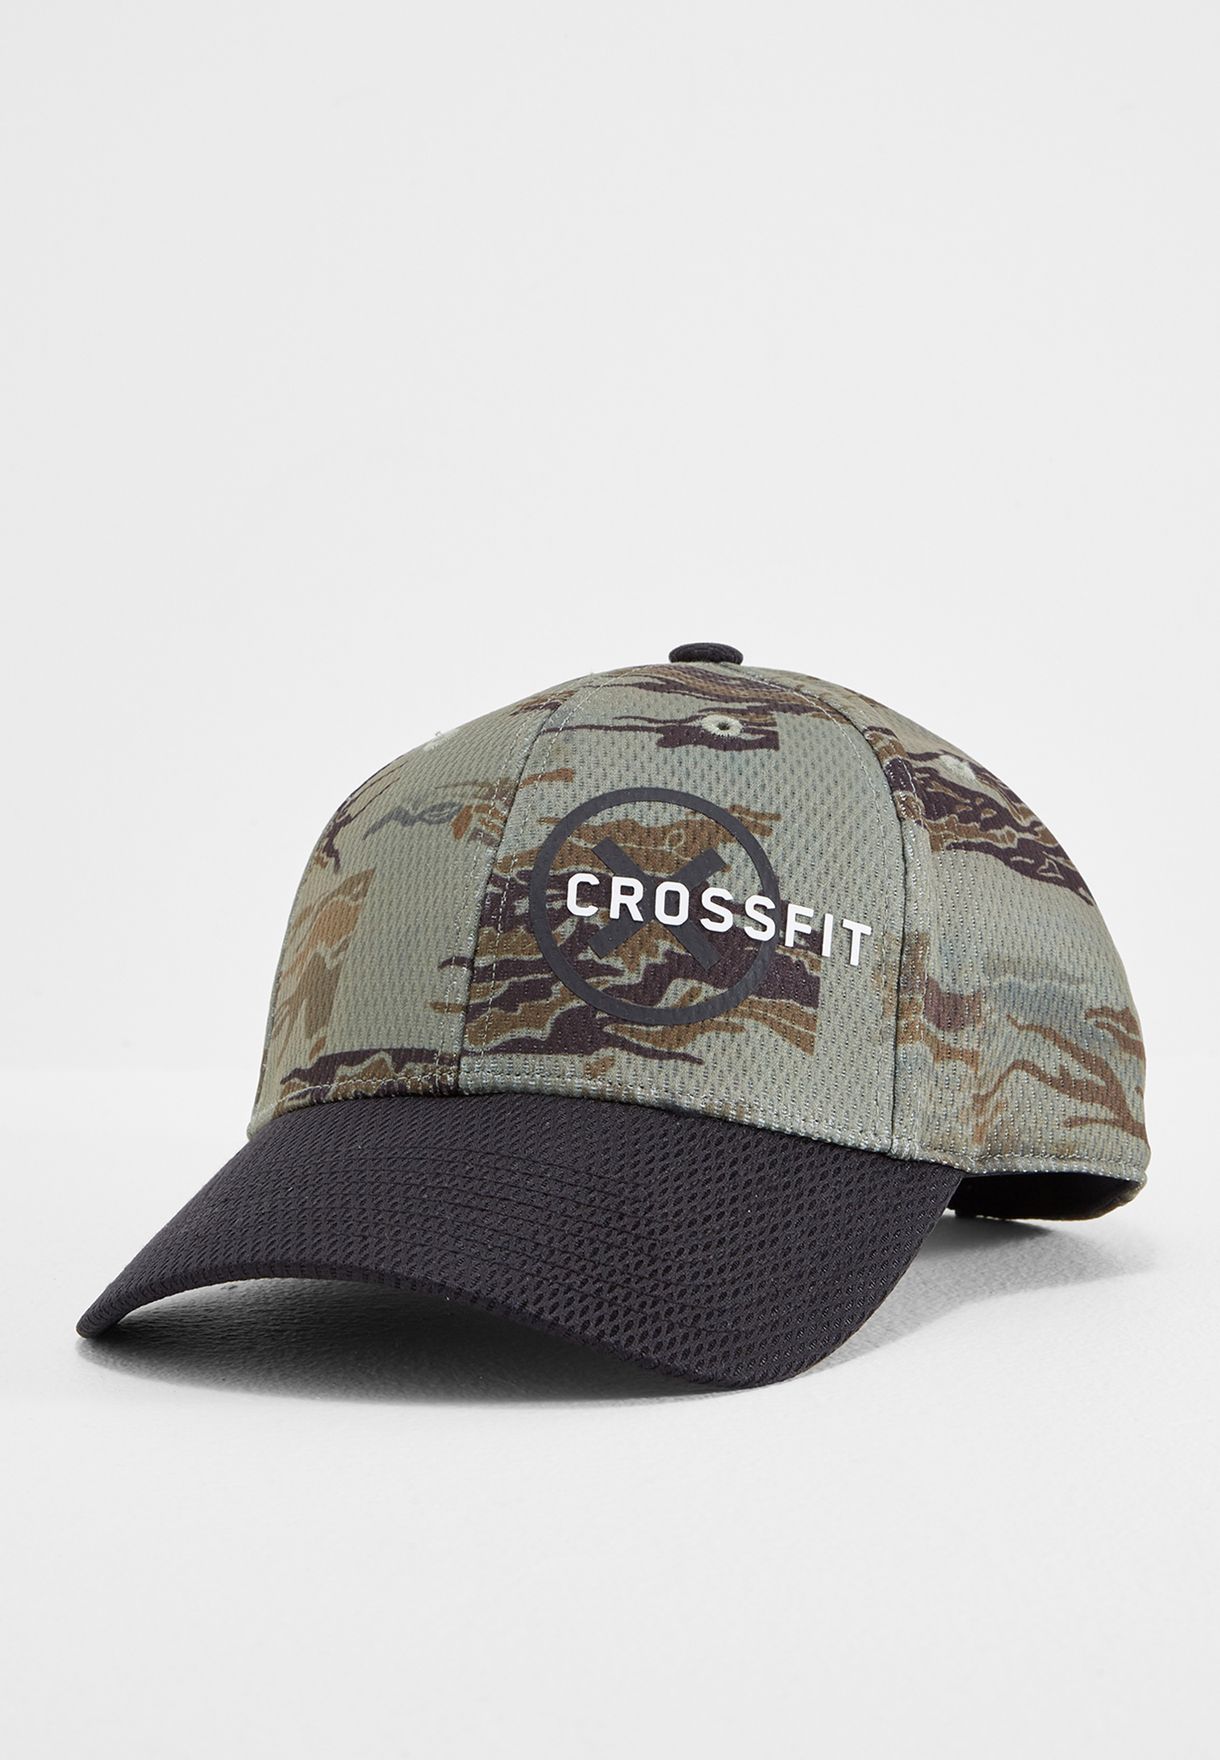 Buy Reebok prints Crossfit Baseball Cap 